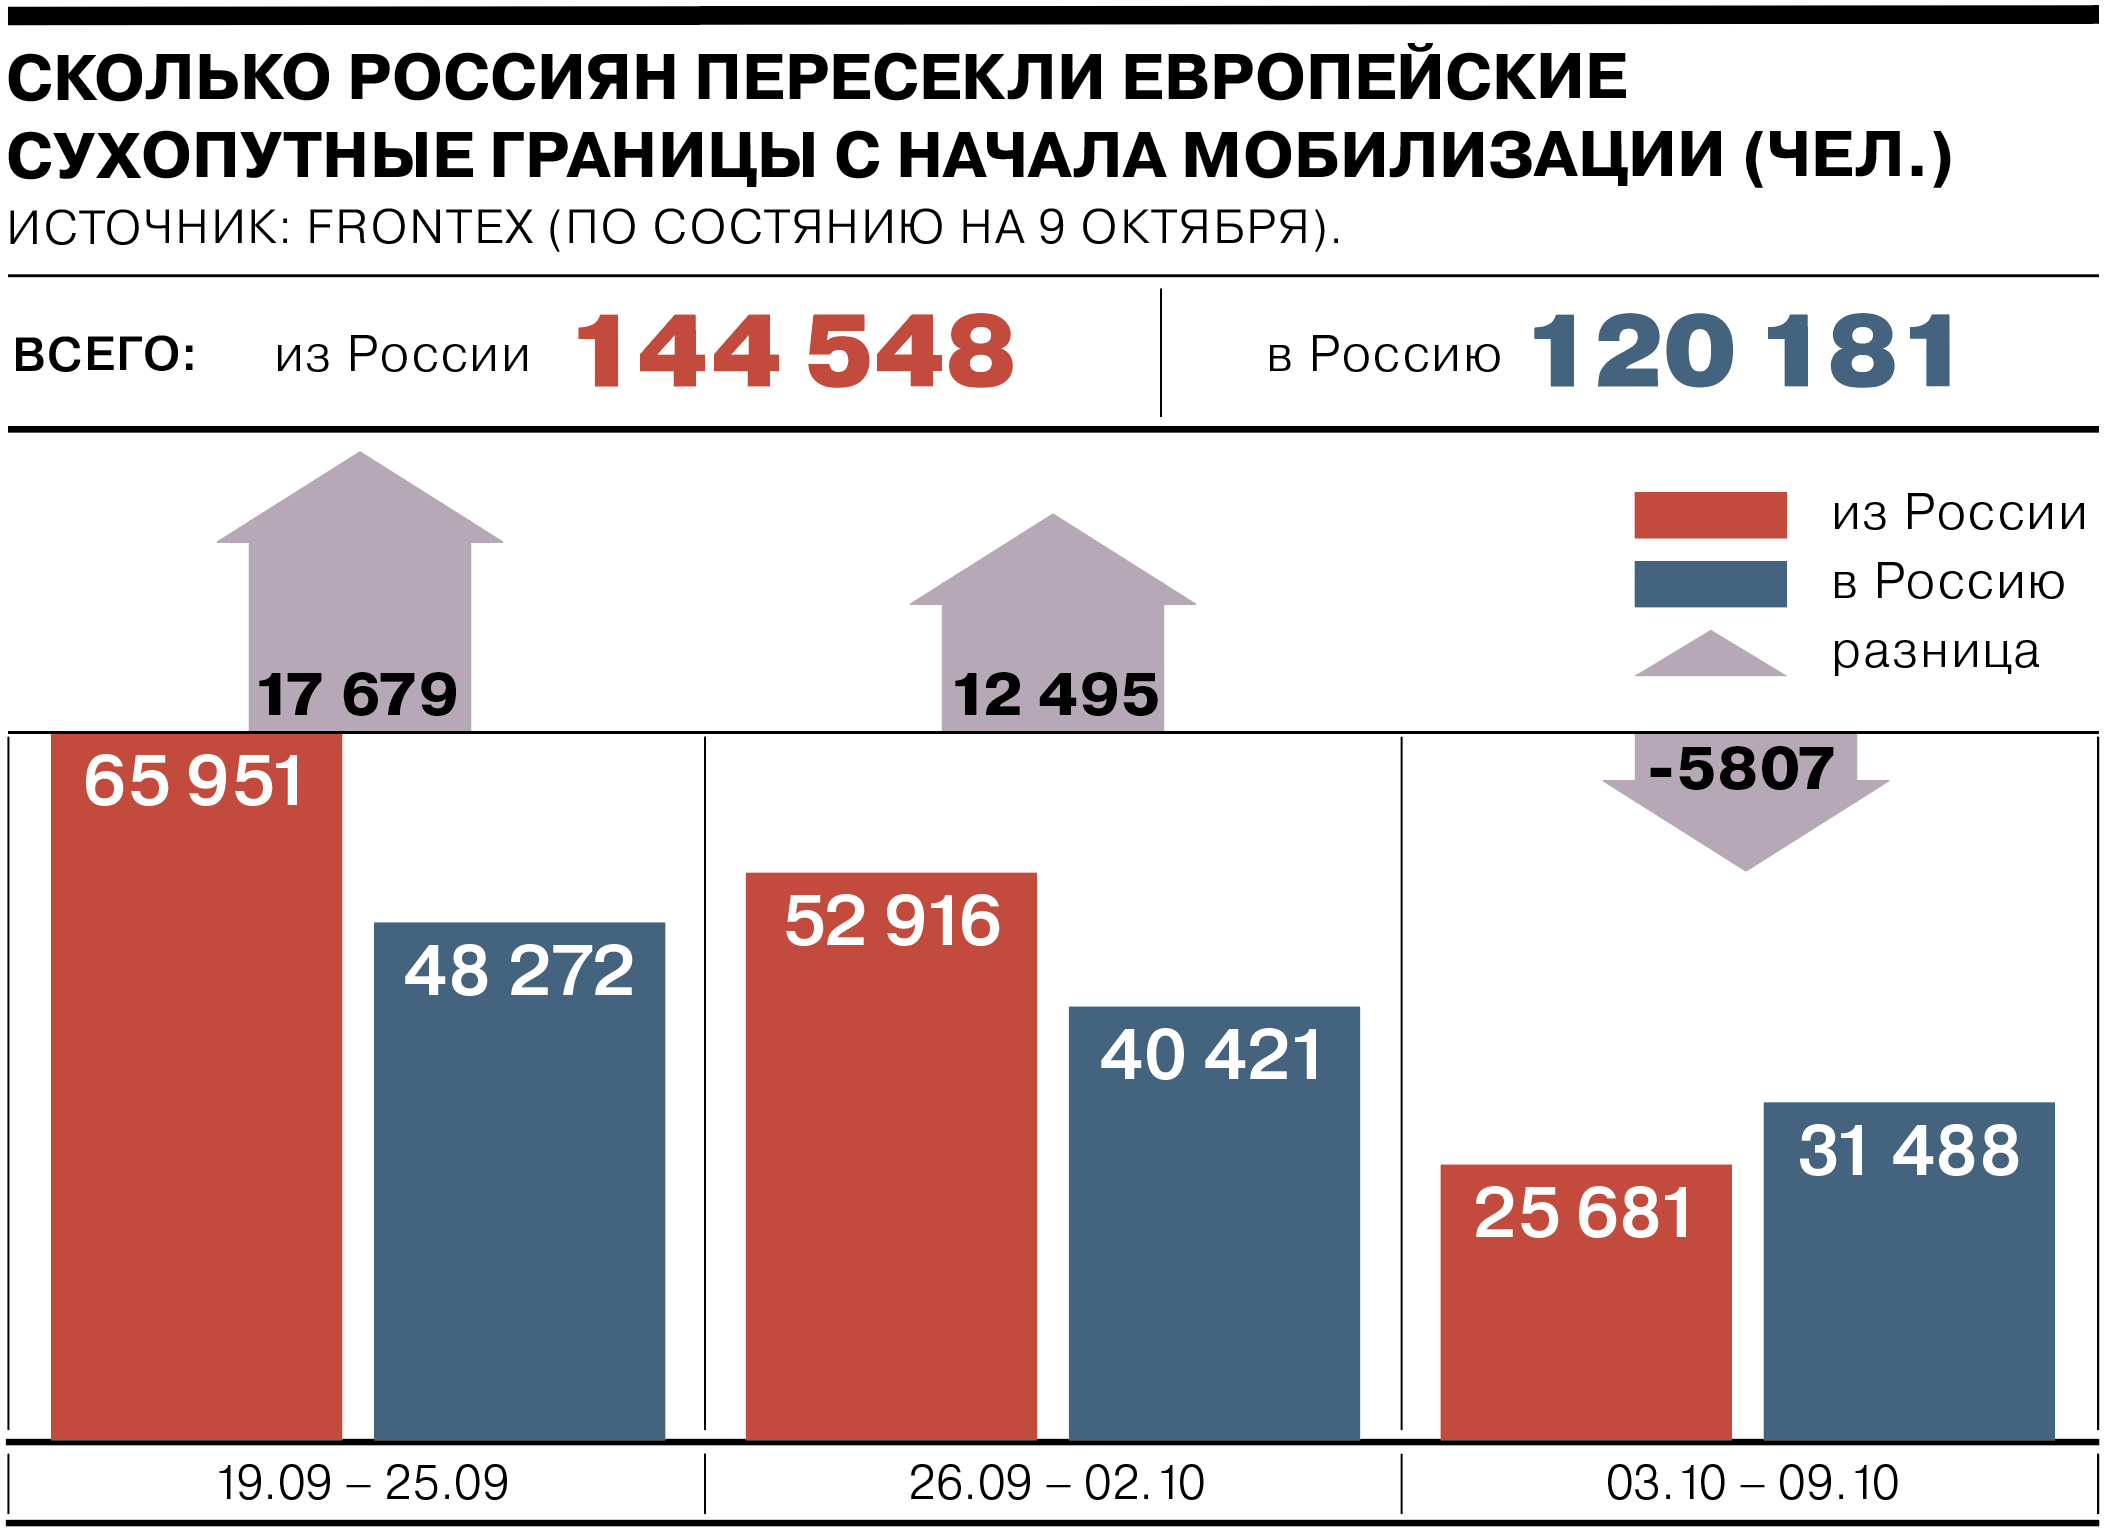 Сколько набрали мобилизованных. Статистика мобилизации. Количество мобилизированных в России. Число мобилизованных по регионам. Количество мобилизованных по регионам.